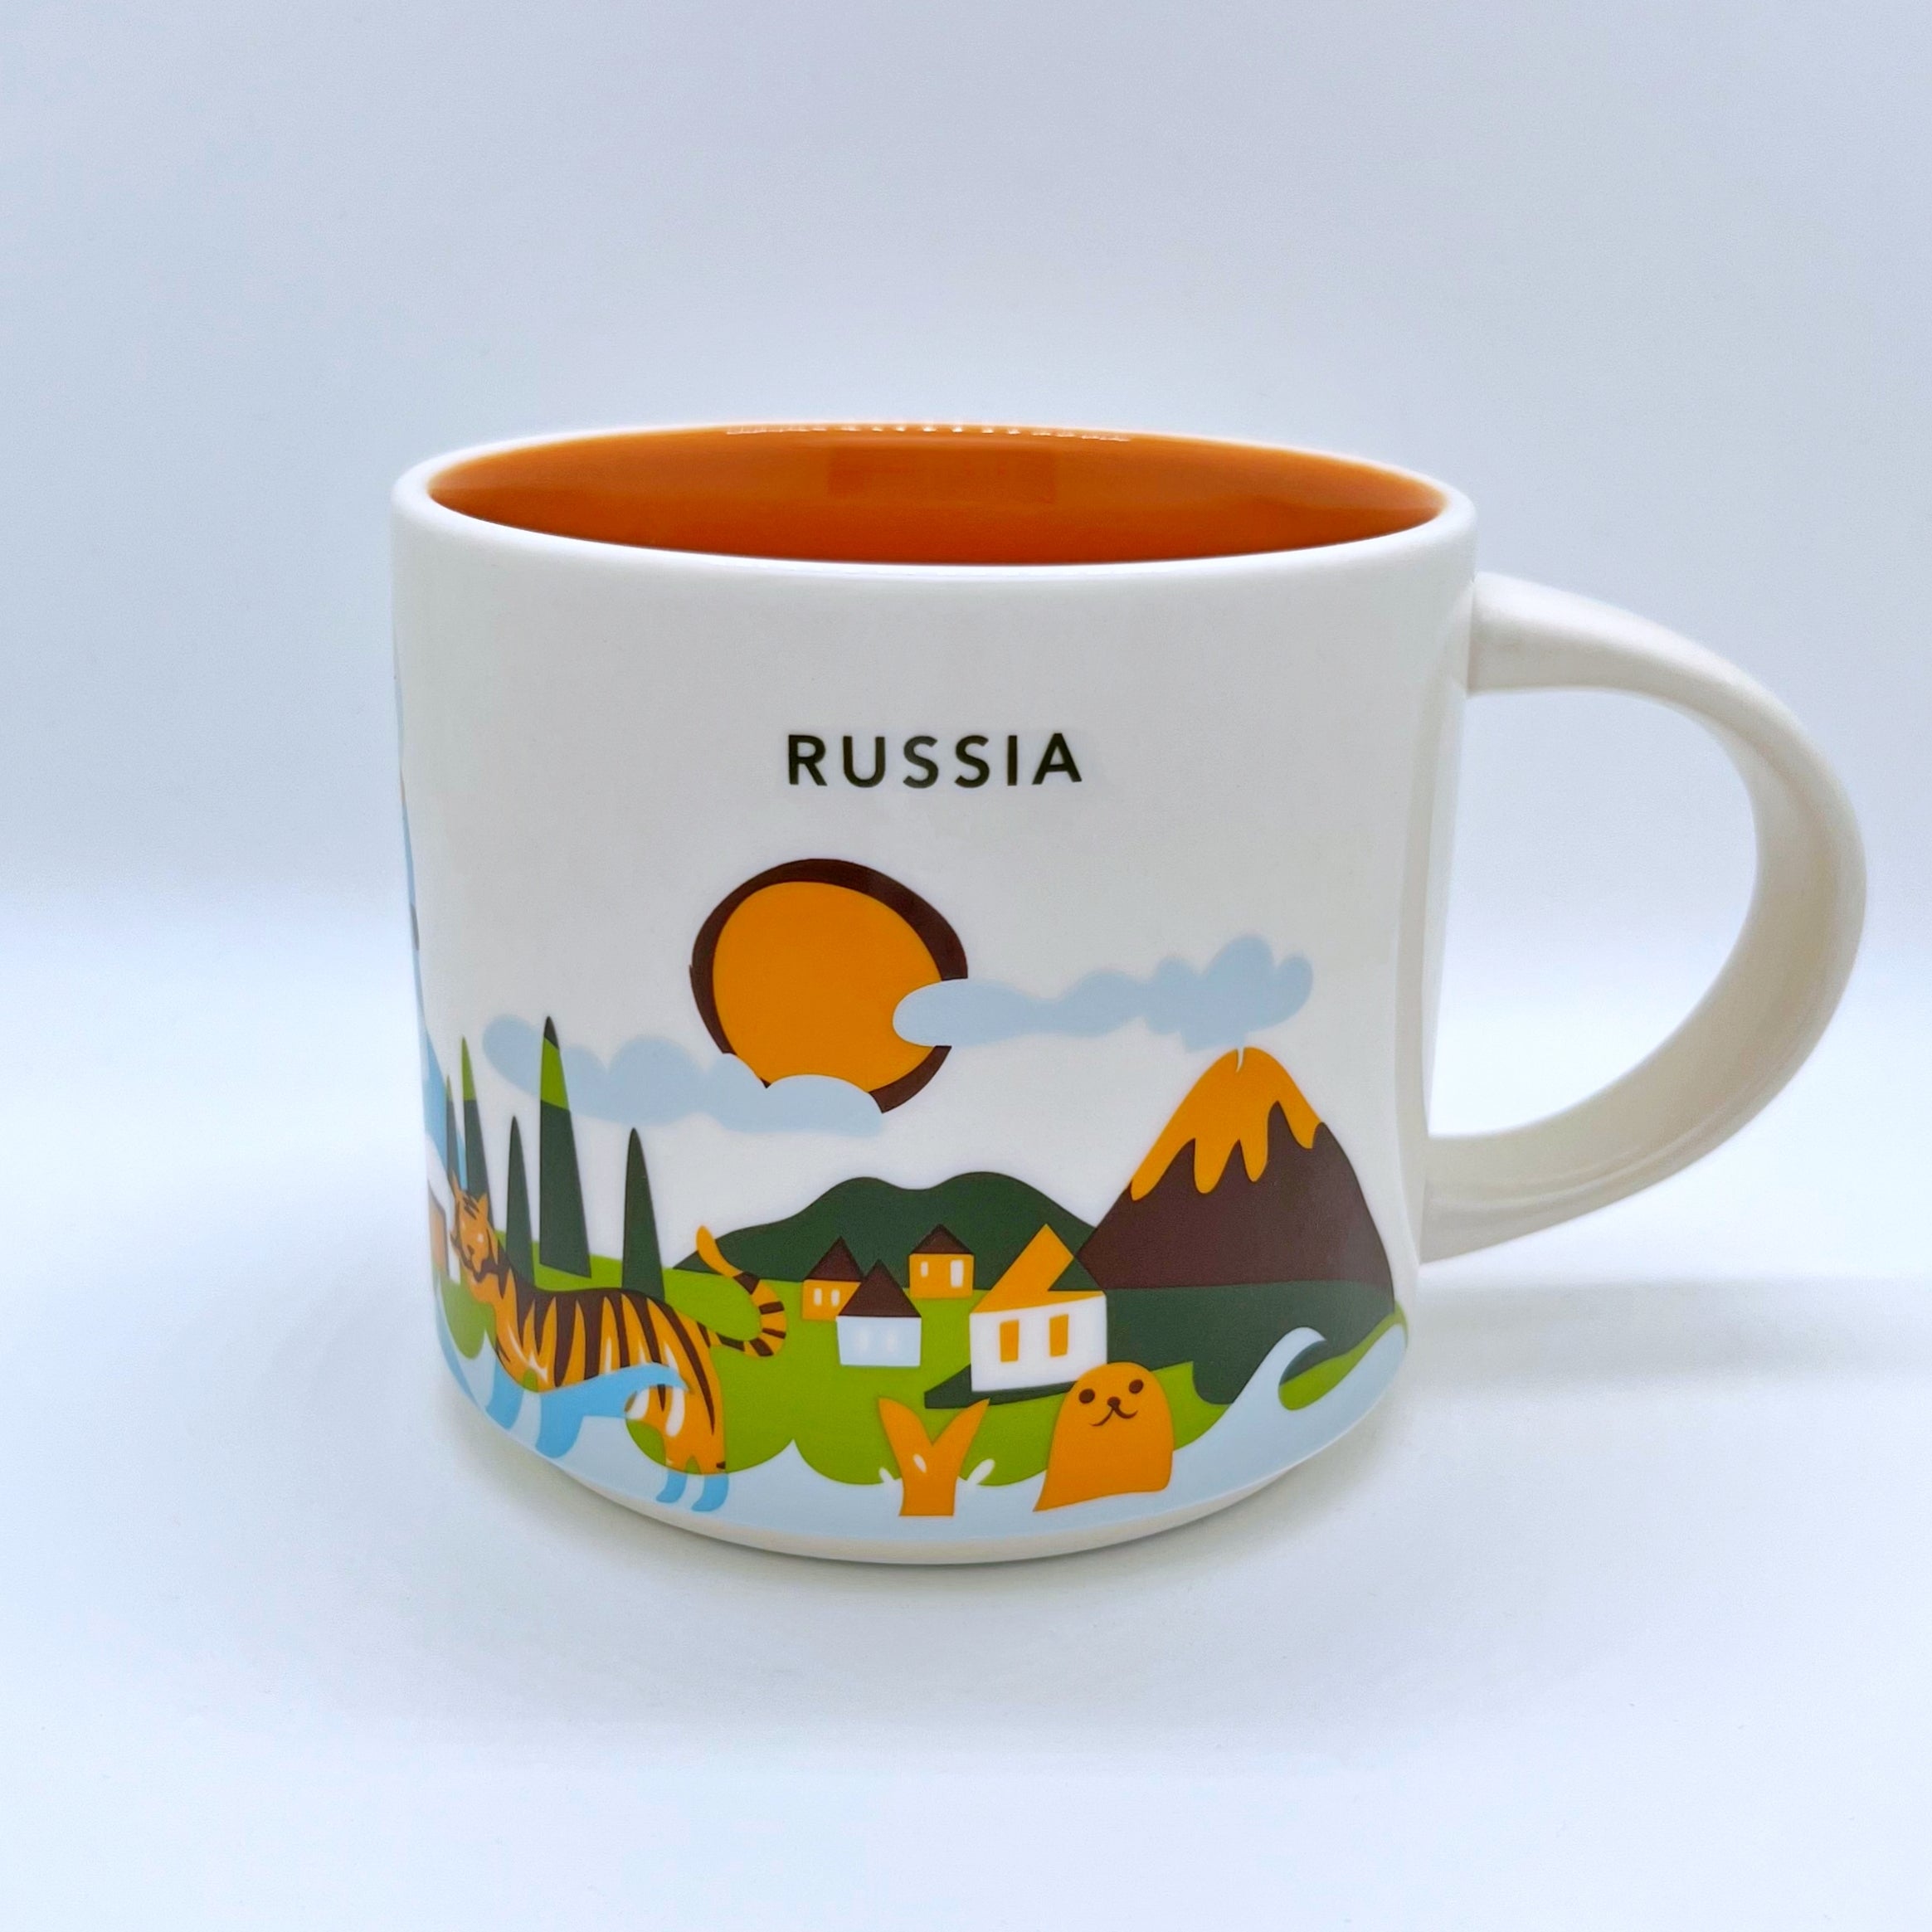 Kaffee Tee und Cappuccino Tasse von Starbucks mit gemalten Bildern aus dem Land Russland